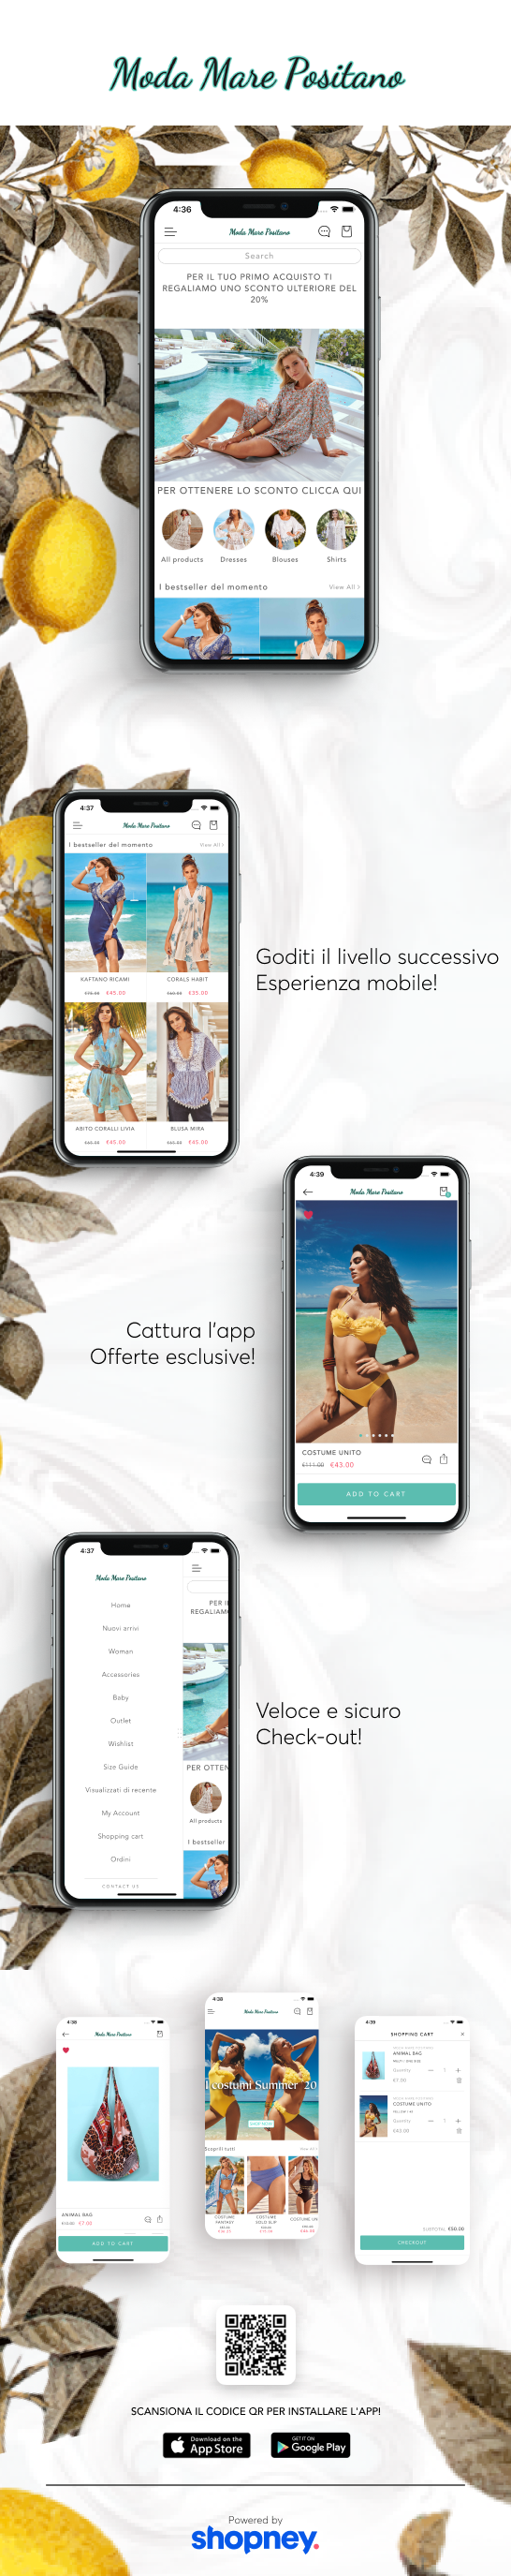 the mobile app design of Moda Mare Positano app